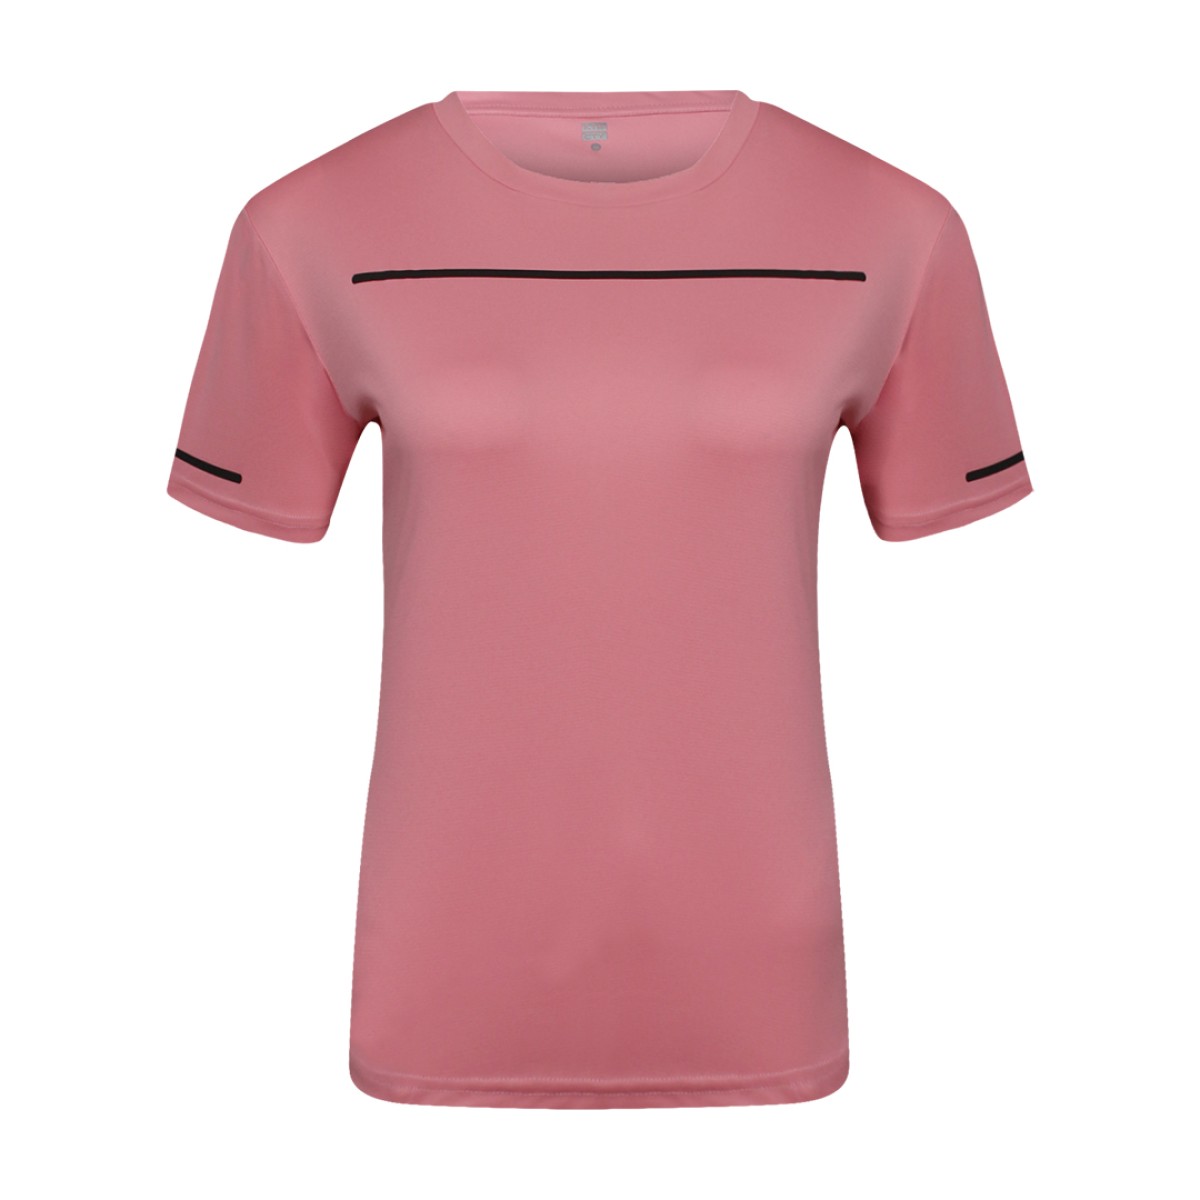 women-round-neck-t-shirt-kwrt26233-2a